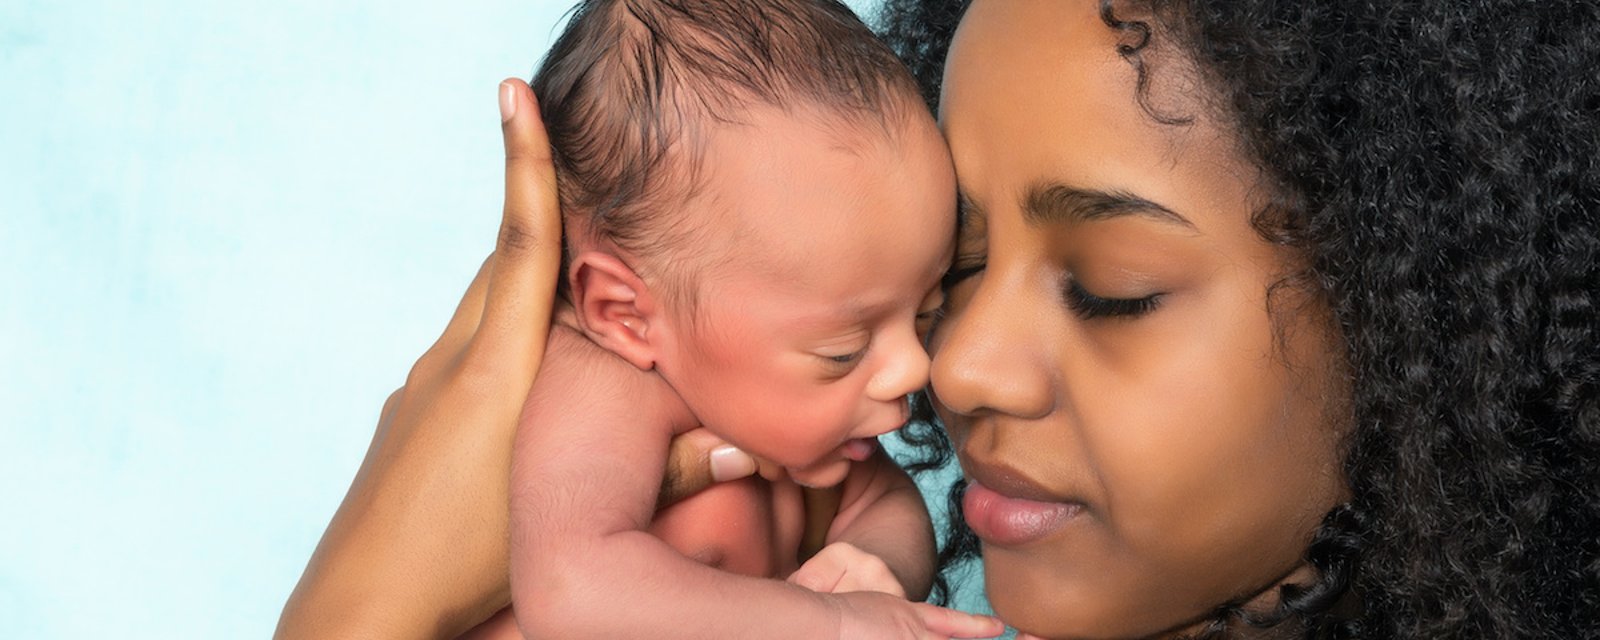 7 changements étonnants qui peuvent survenir chez une femme après un accouchement